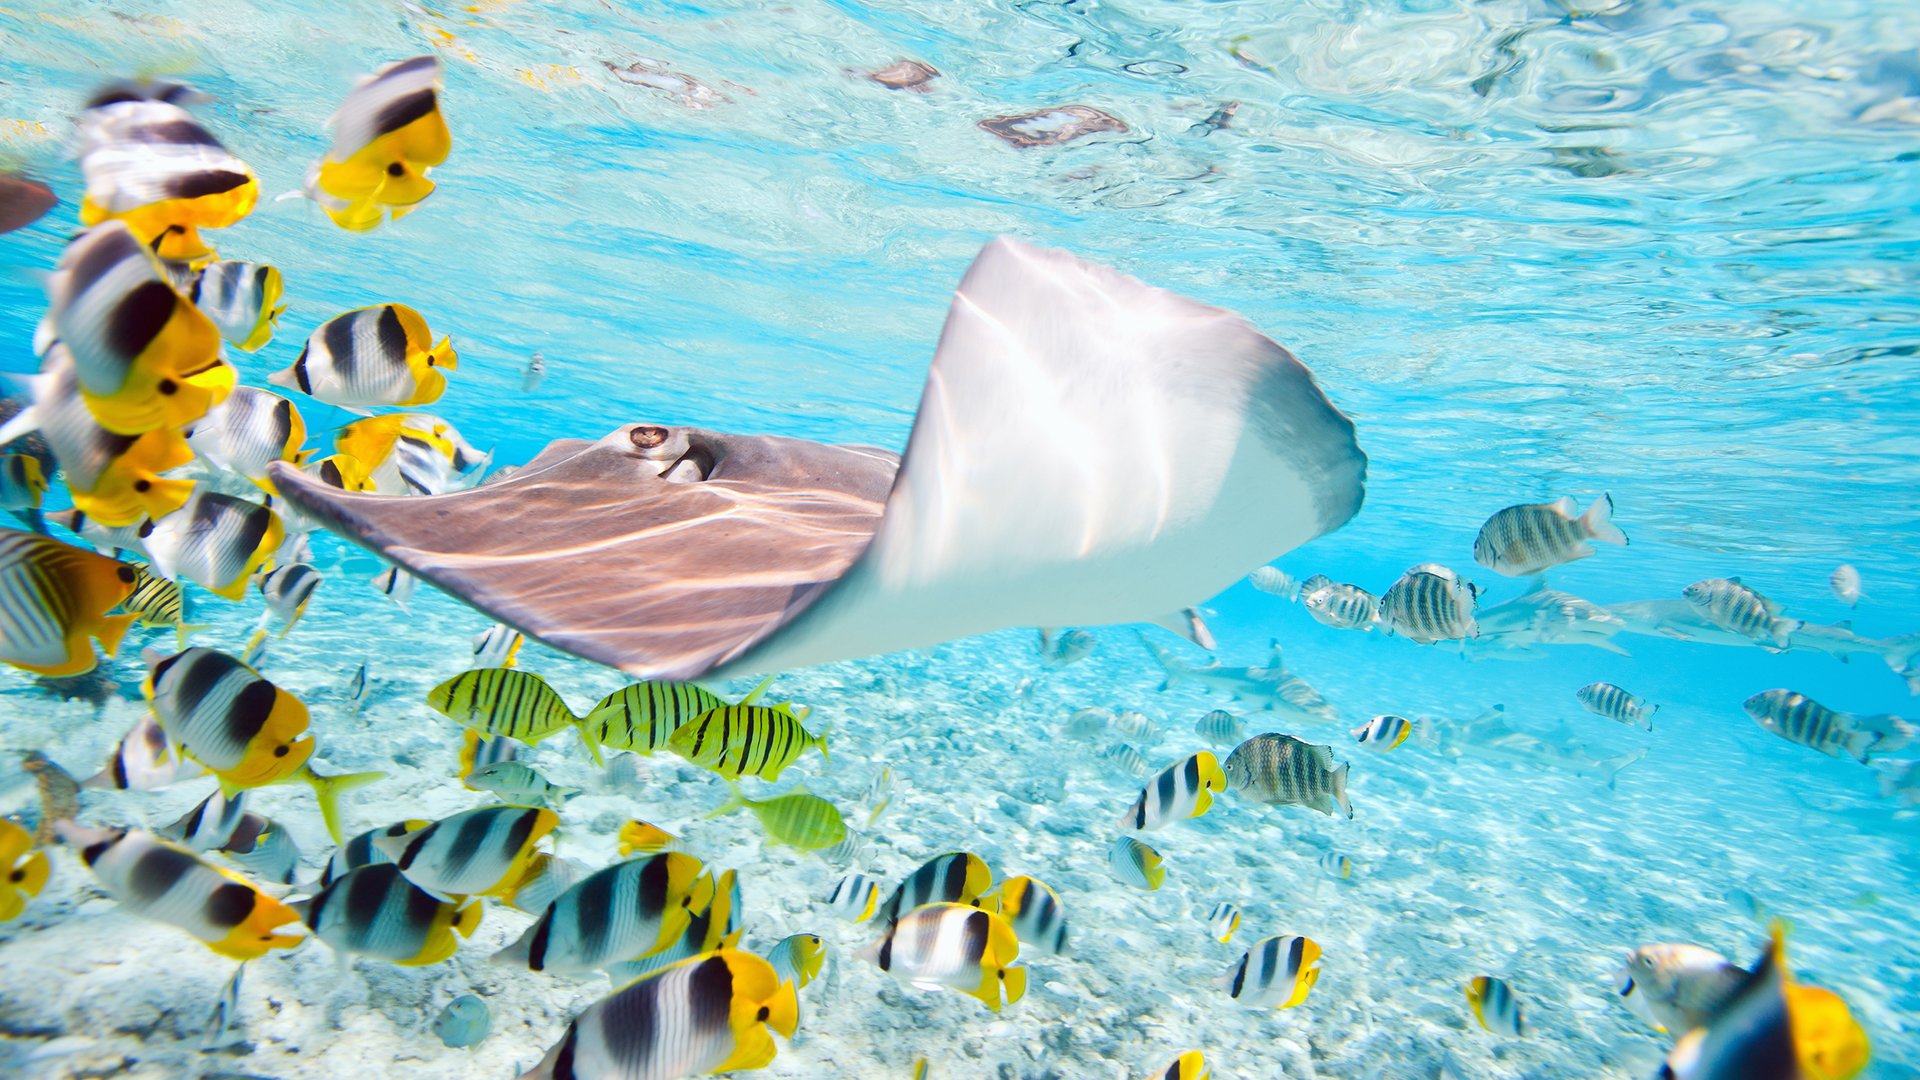 capture unforgettable underwater photos during your bora bora vacation